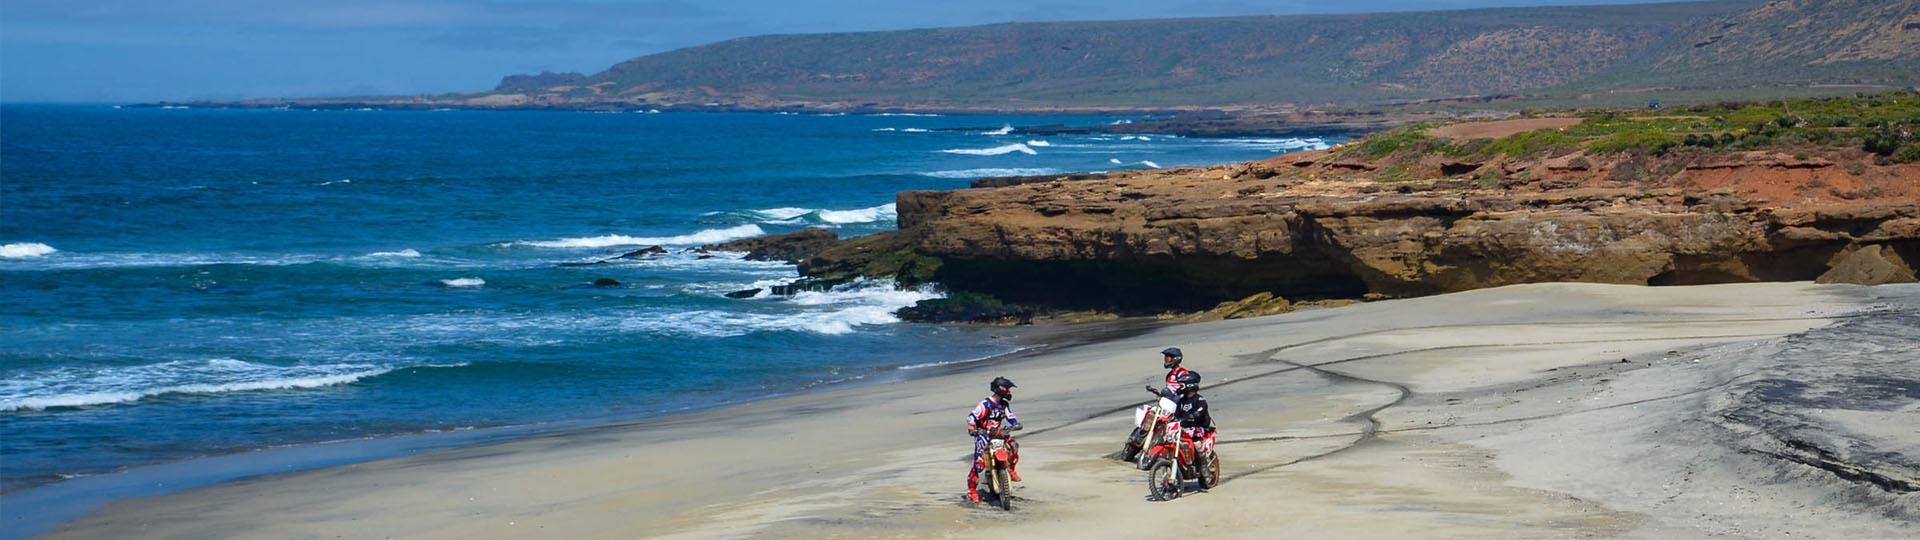 Motorcycle Adventure Ride in Baja